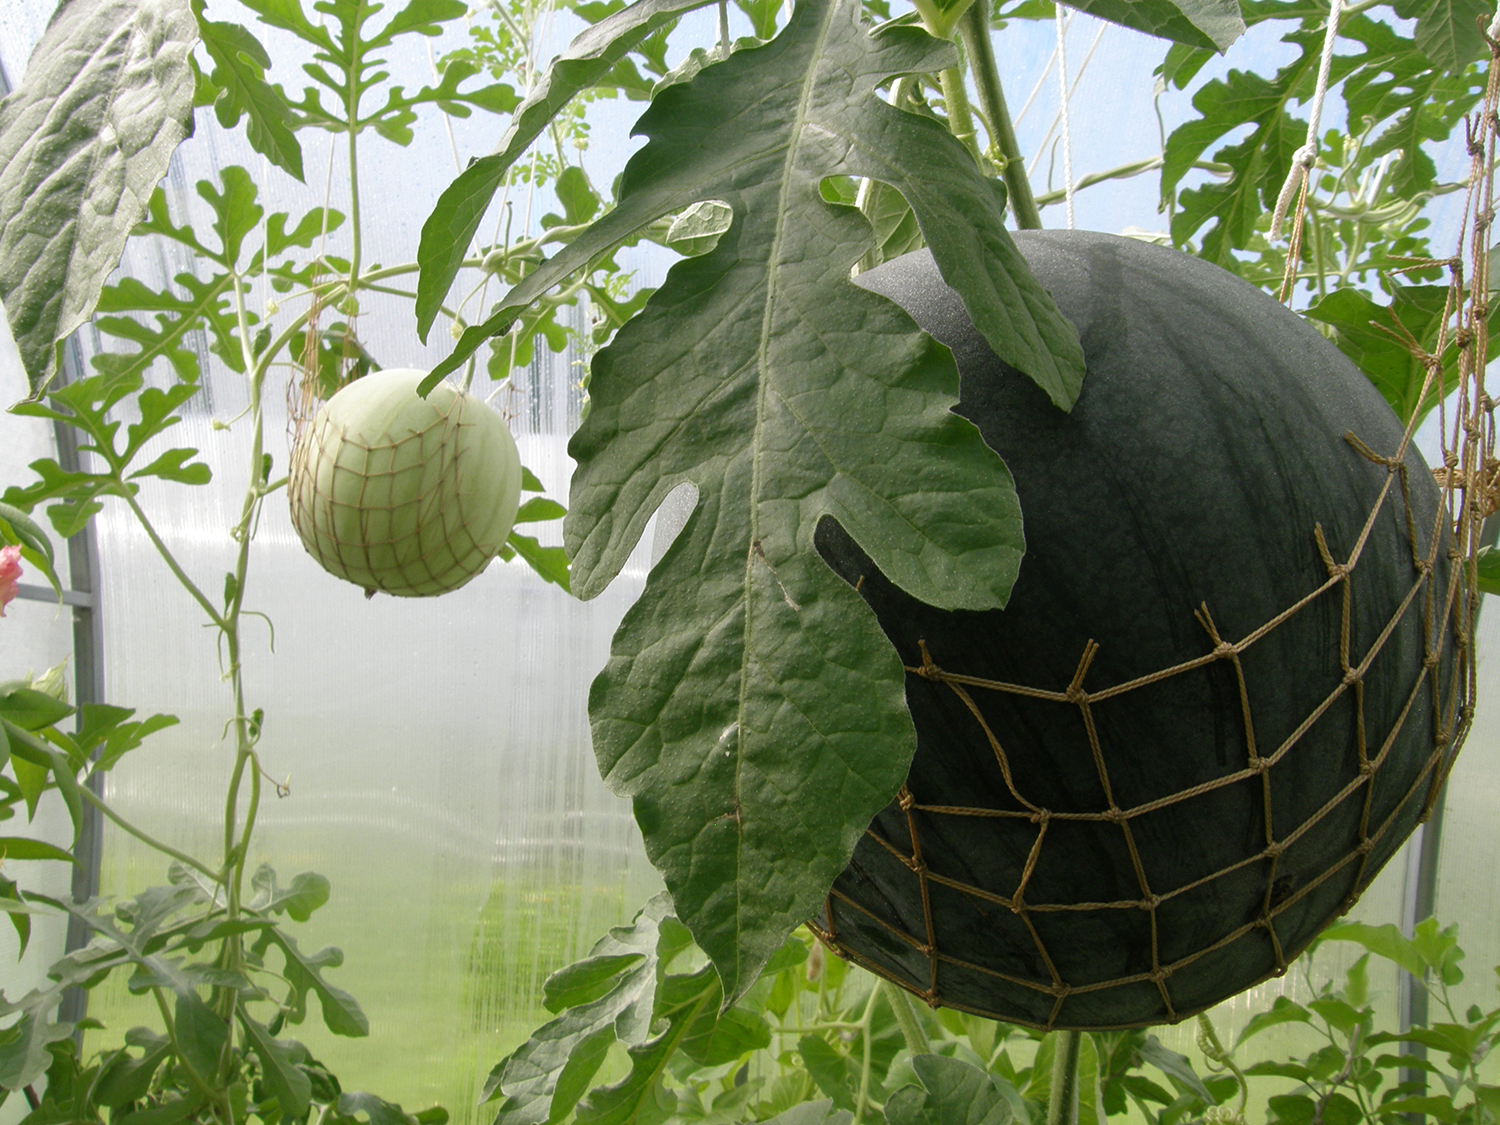 Посадка арбузов в теплице, в том числе из поликарбоната, а также схемаразмещения растений